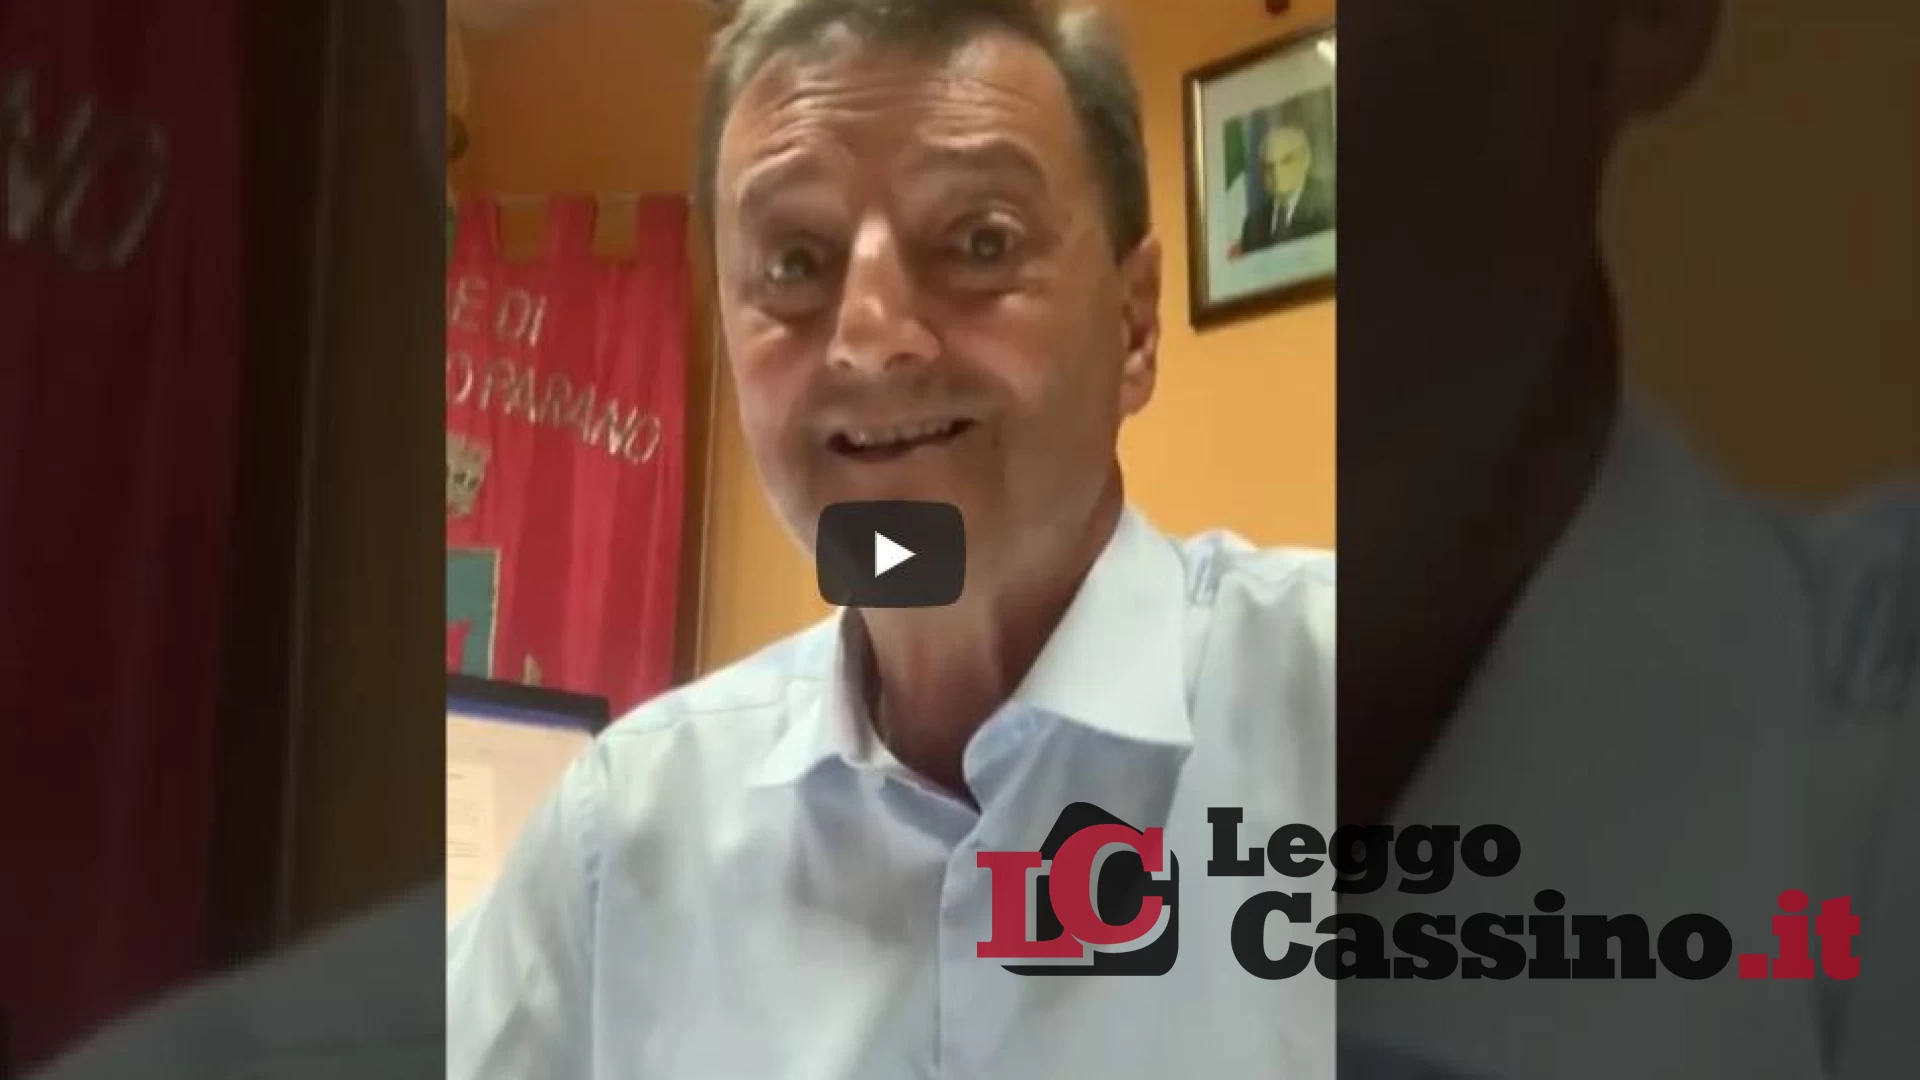 [VIDEO] Il Covid fa paura, Castelnuovo rinvia l'apertura dell'anno scolastico